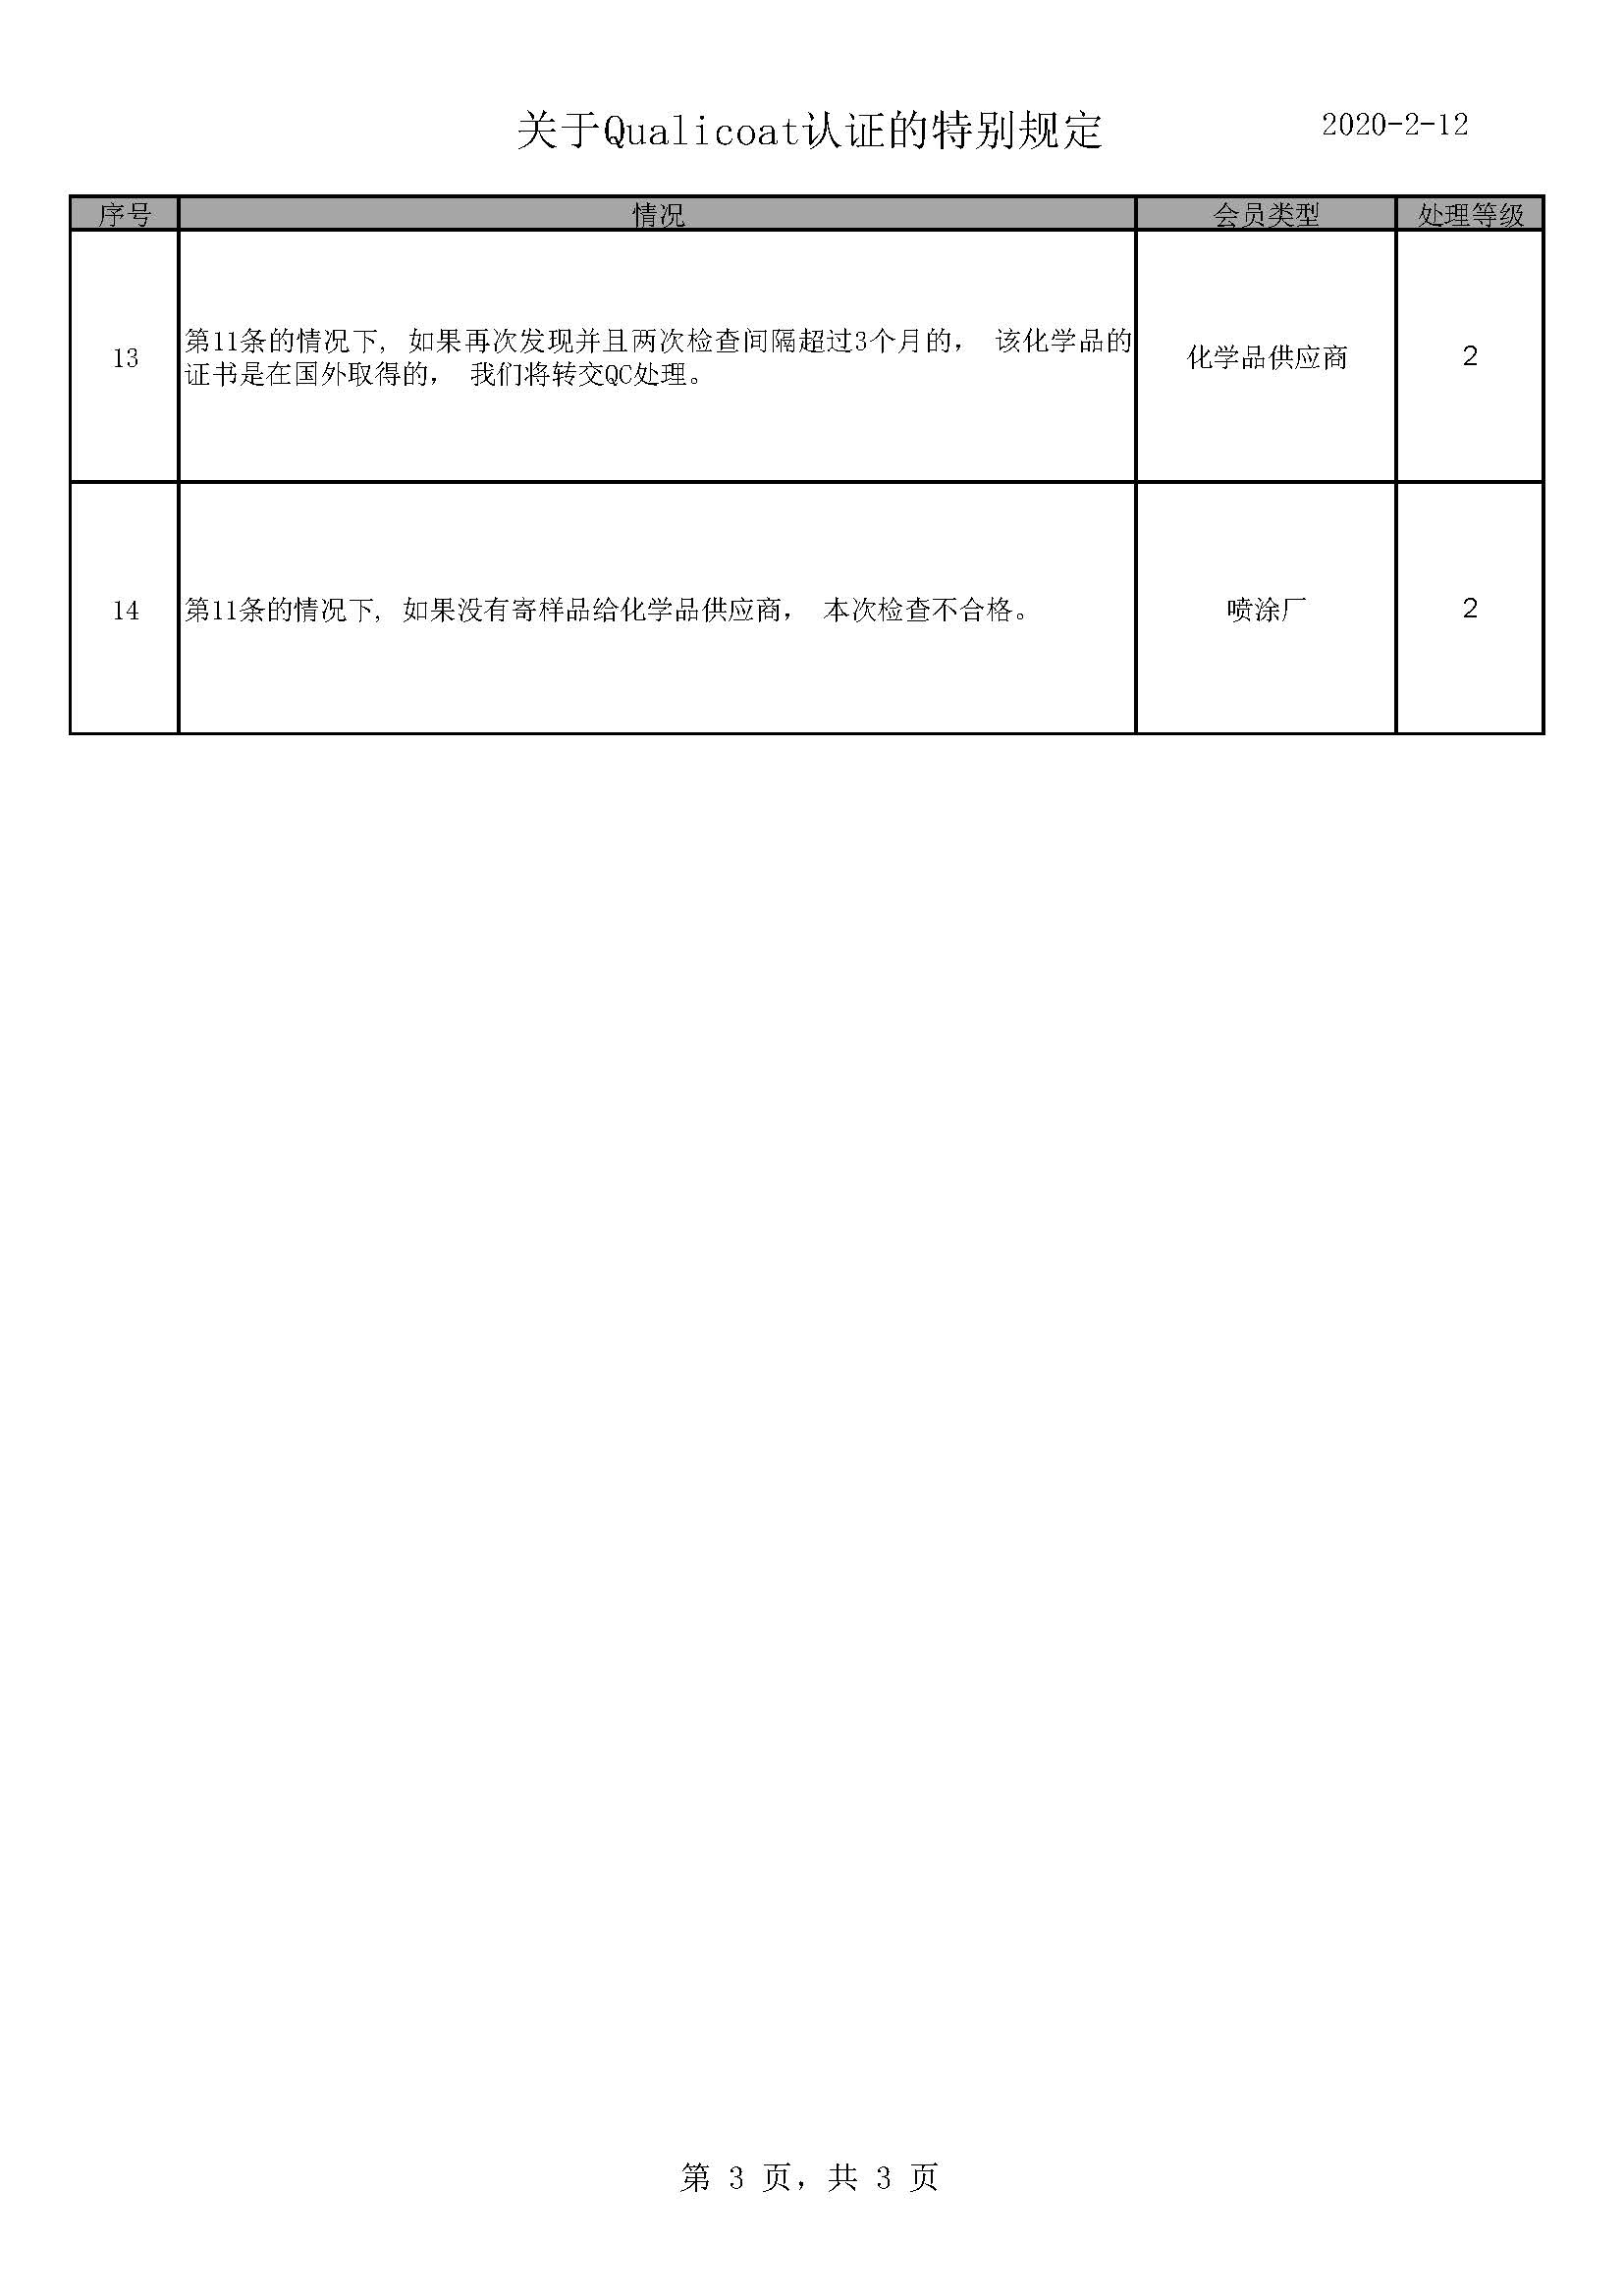 200212 本地规则 - 中文_页面_3.jpg